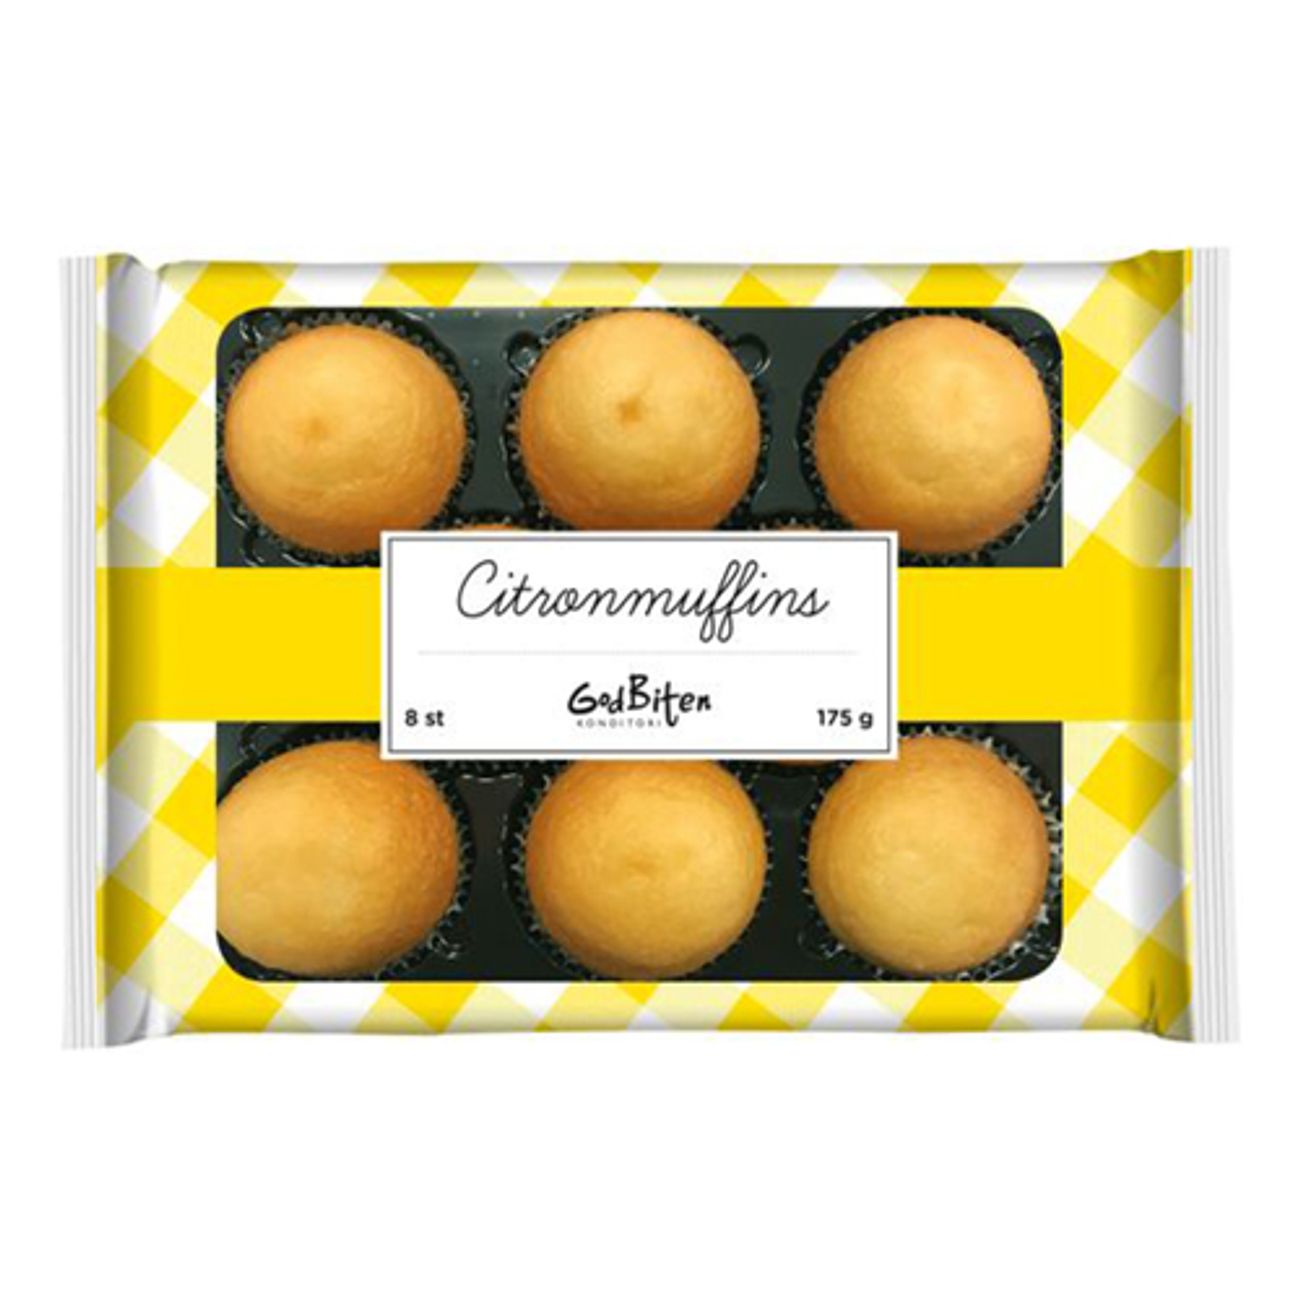 godbiten-citronmuffins-1